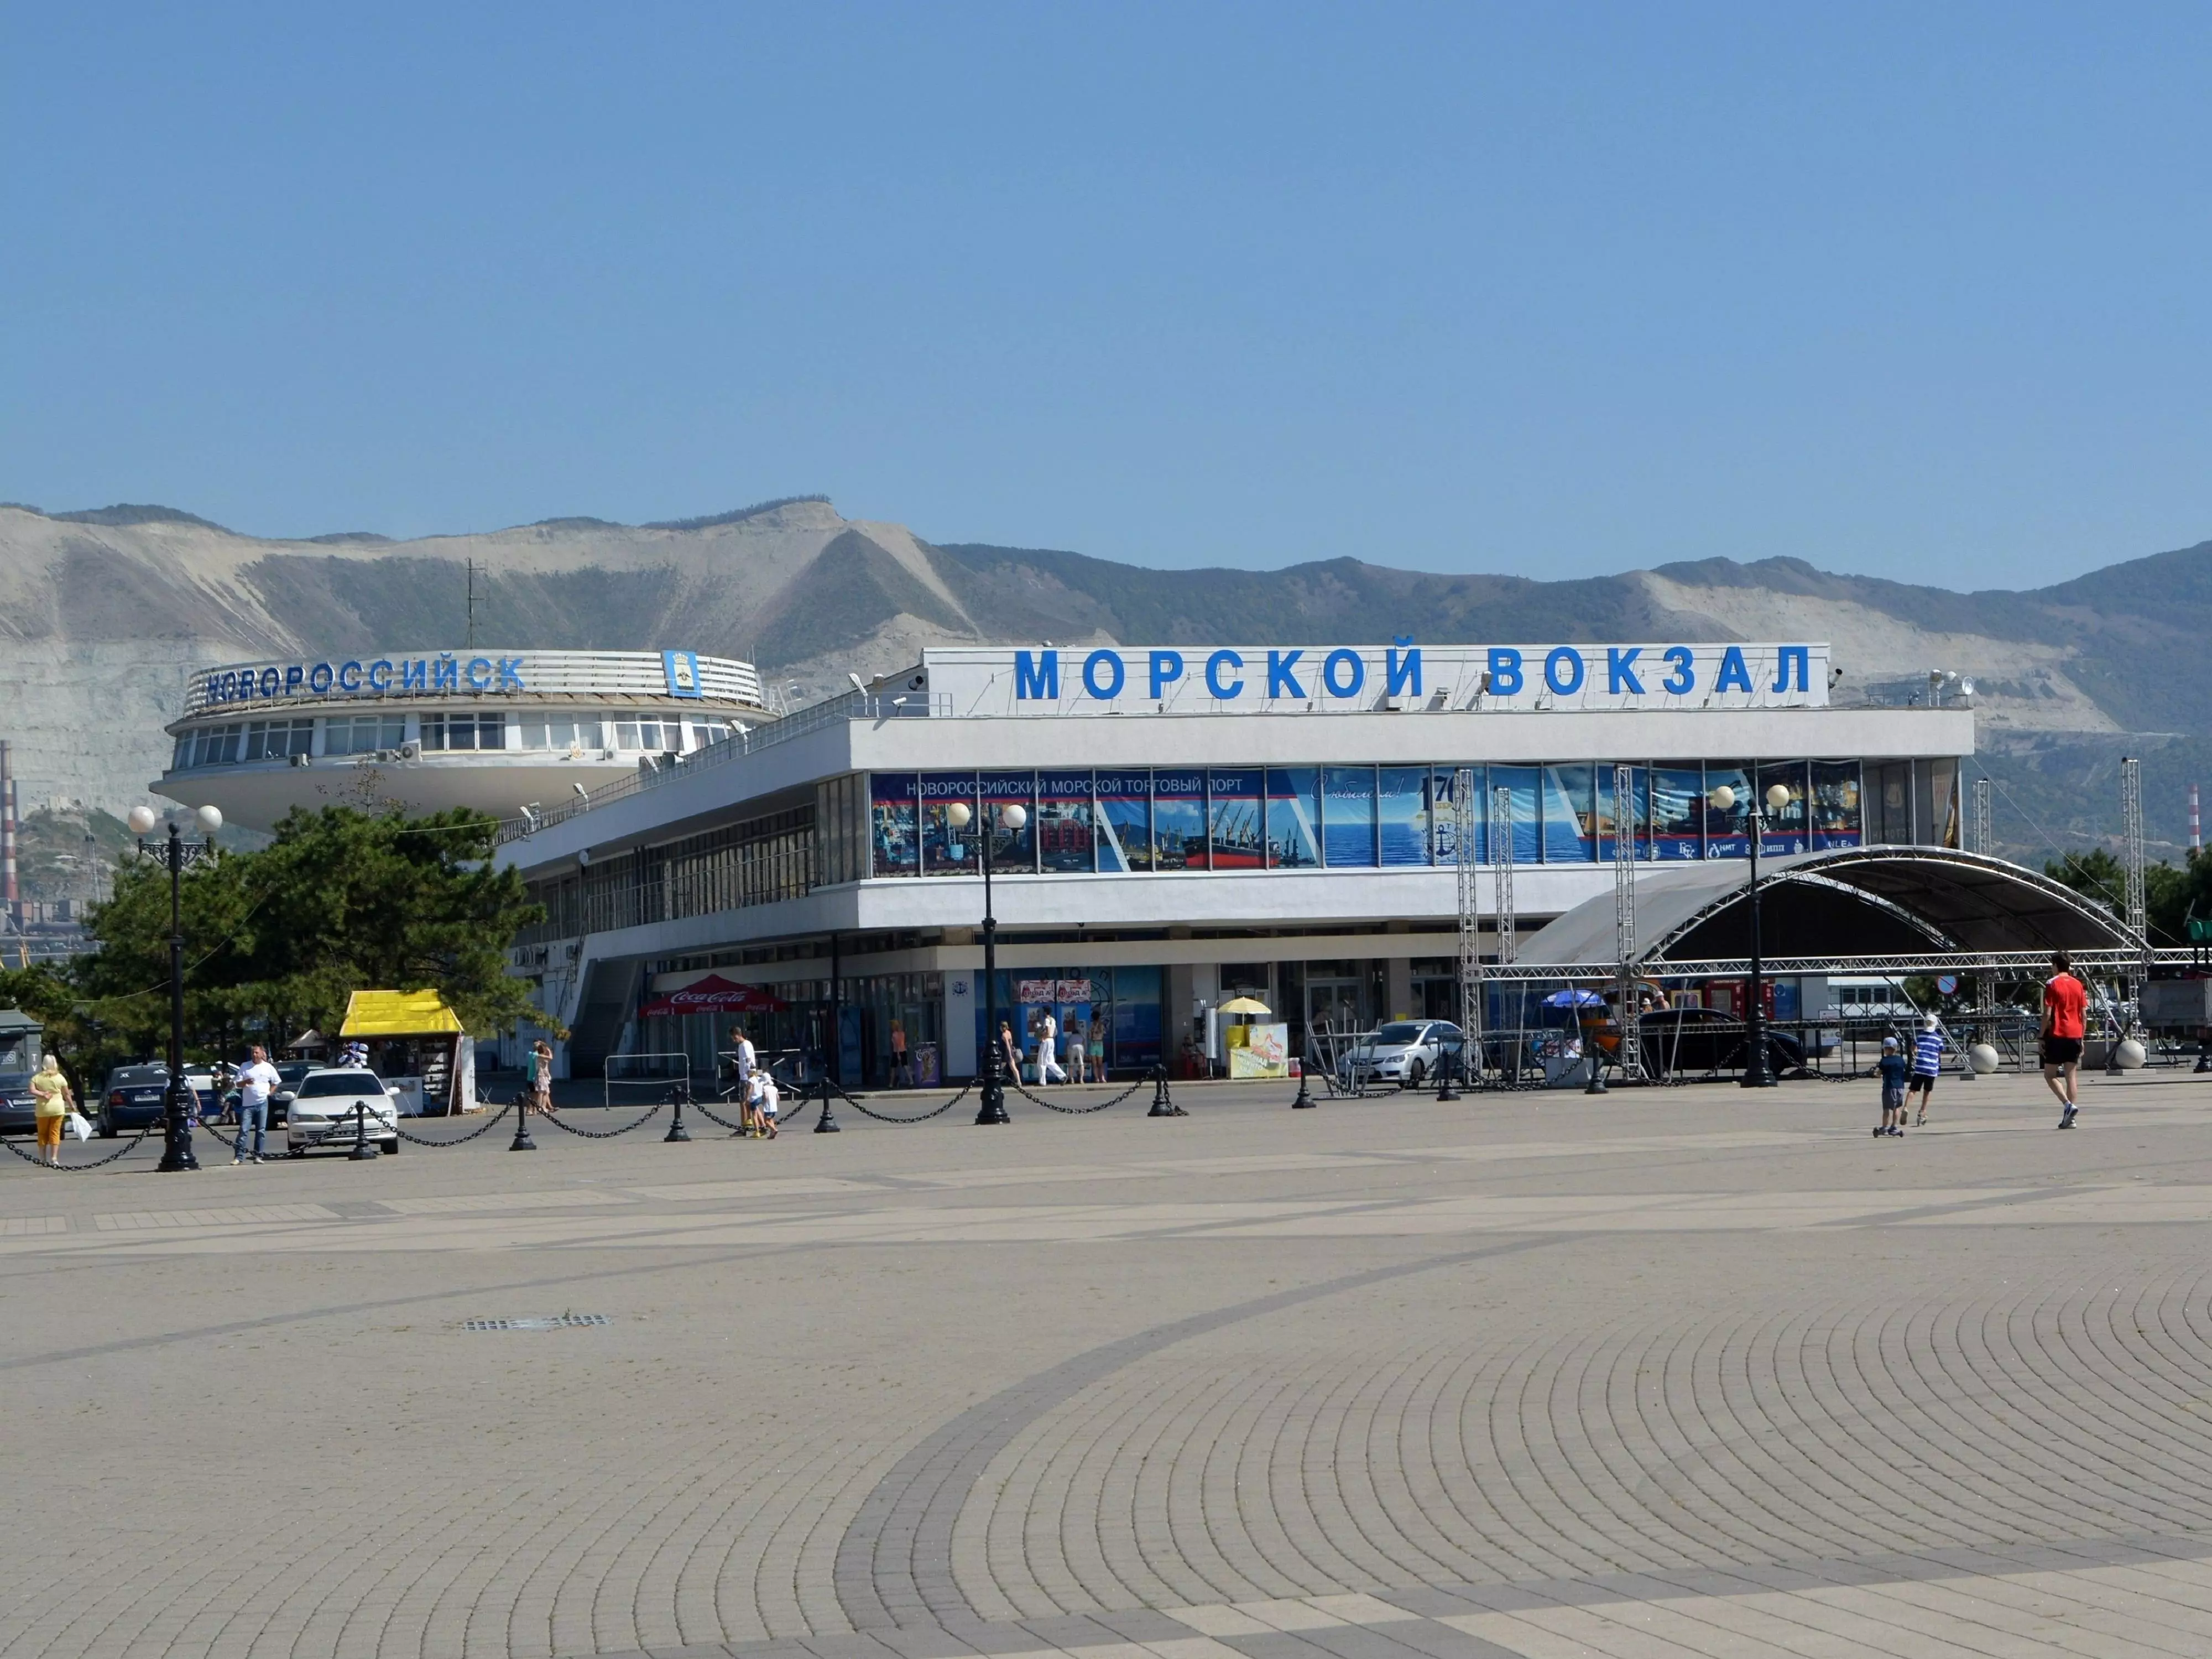 Аэропорт в новороссийске